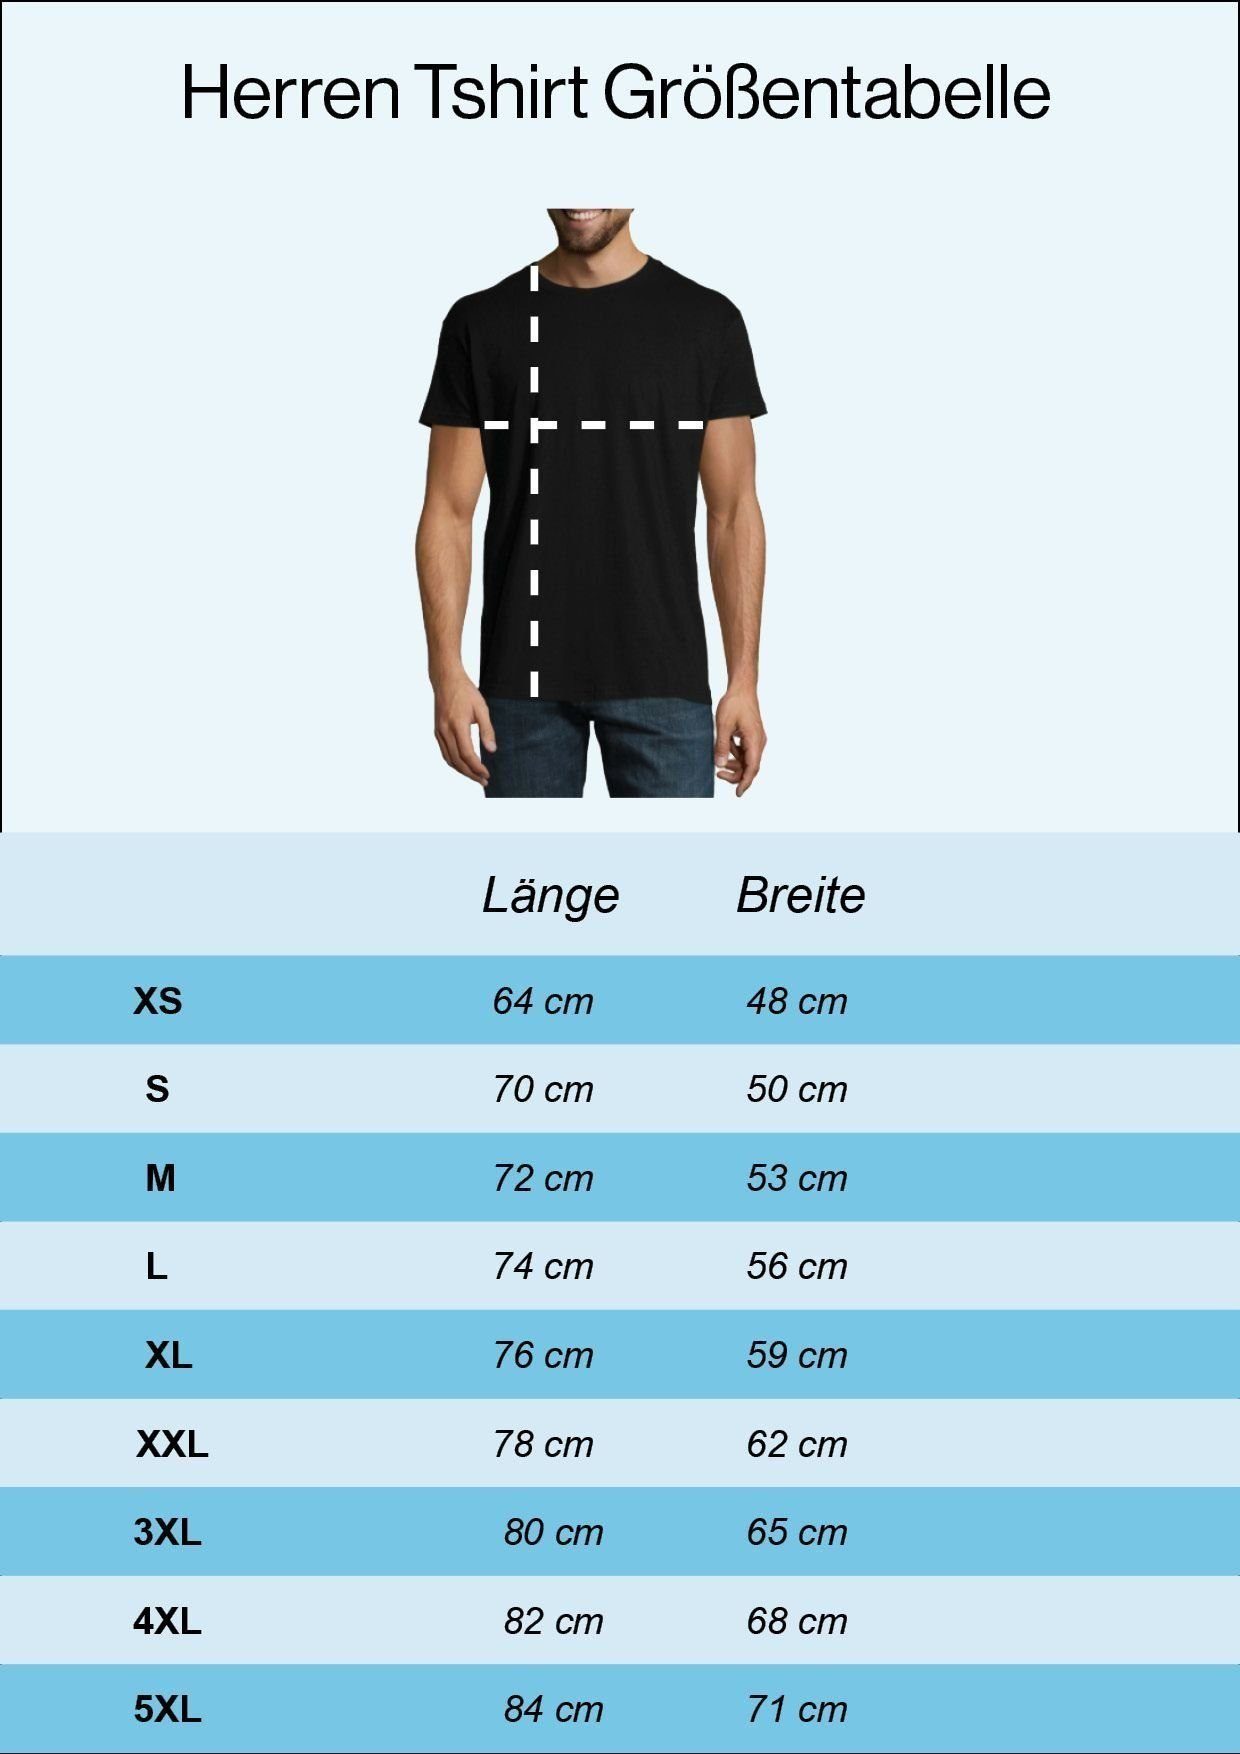 Weiß T-Shirt Moin modischem mit Print-Shirt Anker Youth Logo Designz Spruch Herren Aufdruck